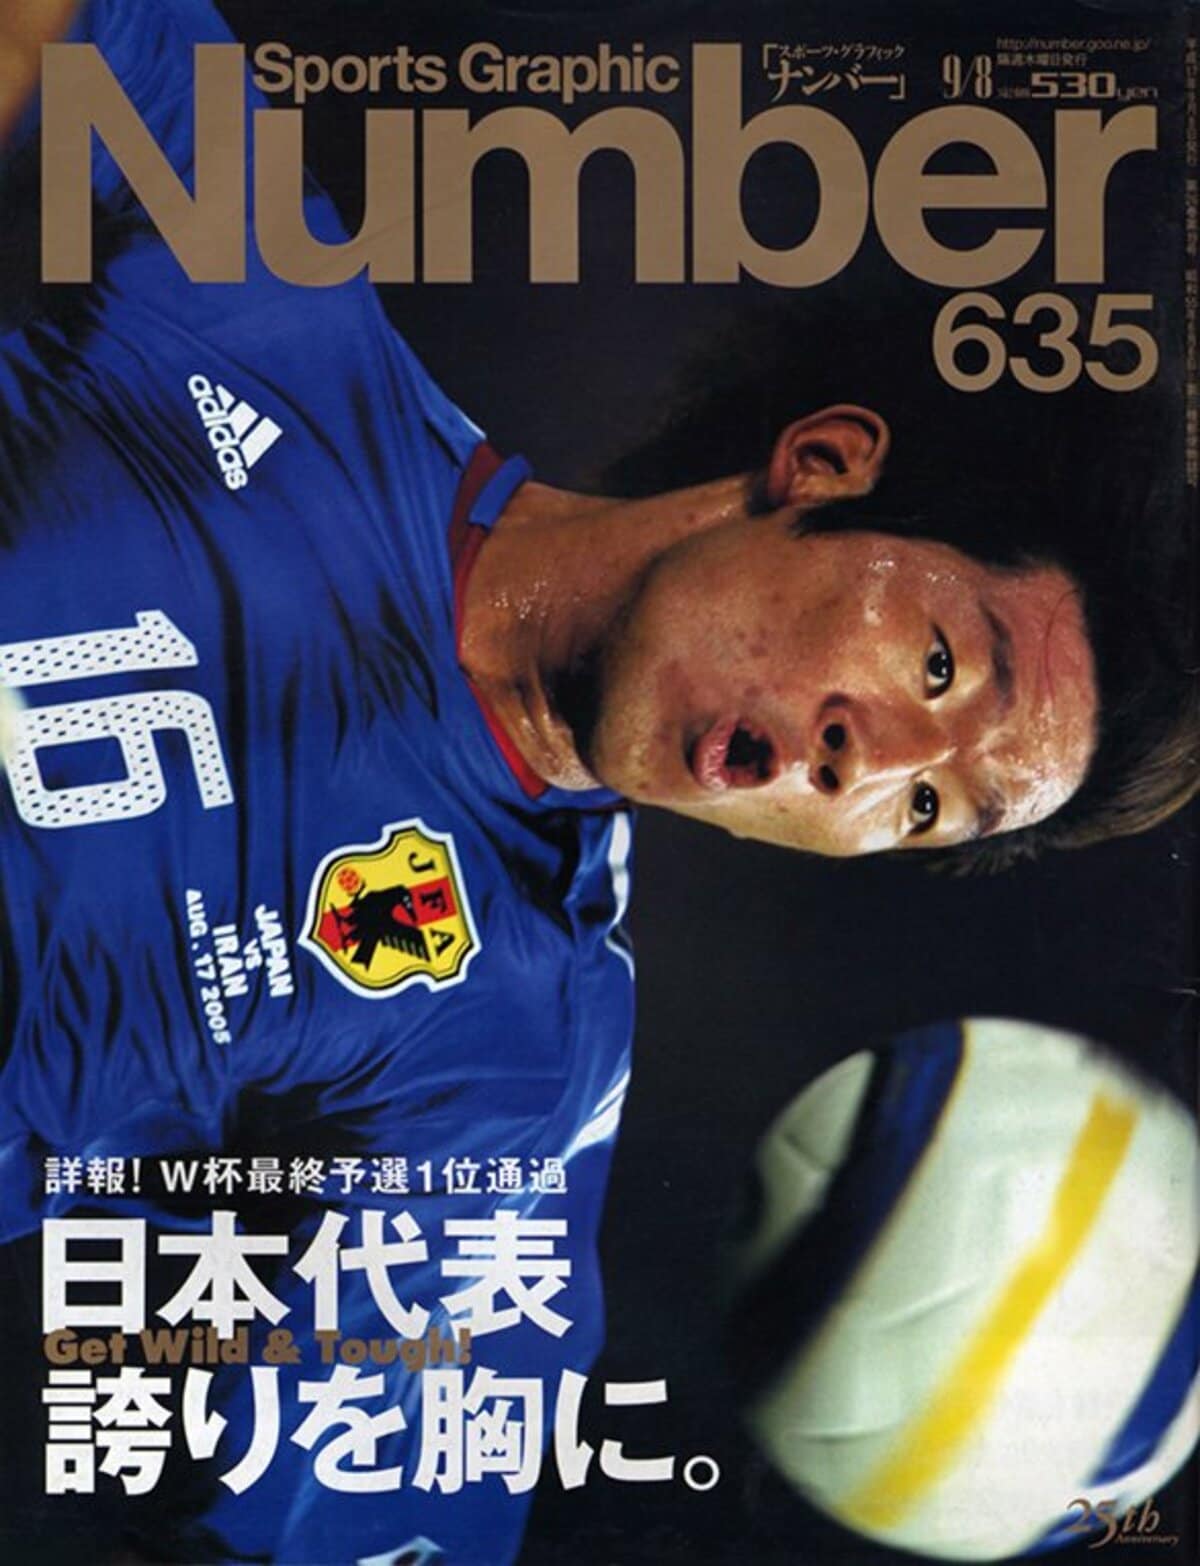 きれい ワールドカップ日本代表2002の記憶 : 日本サッカー協会 